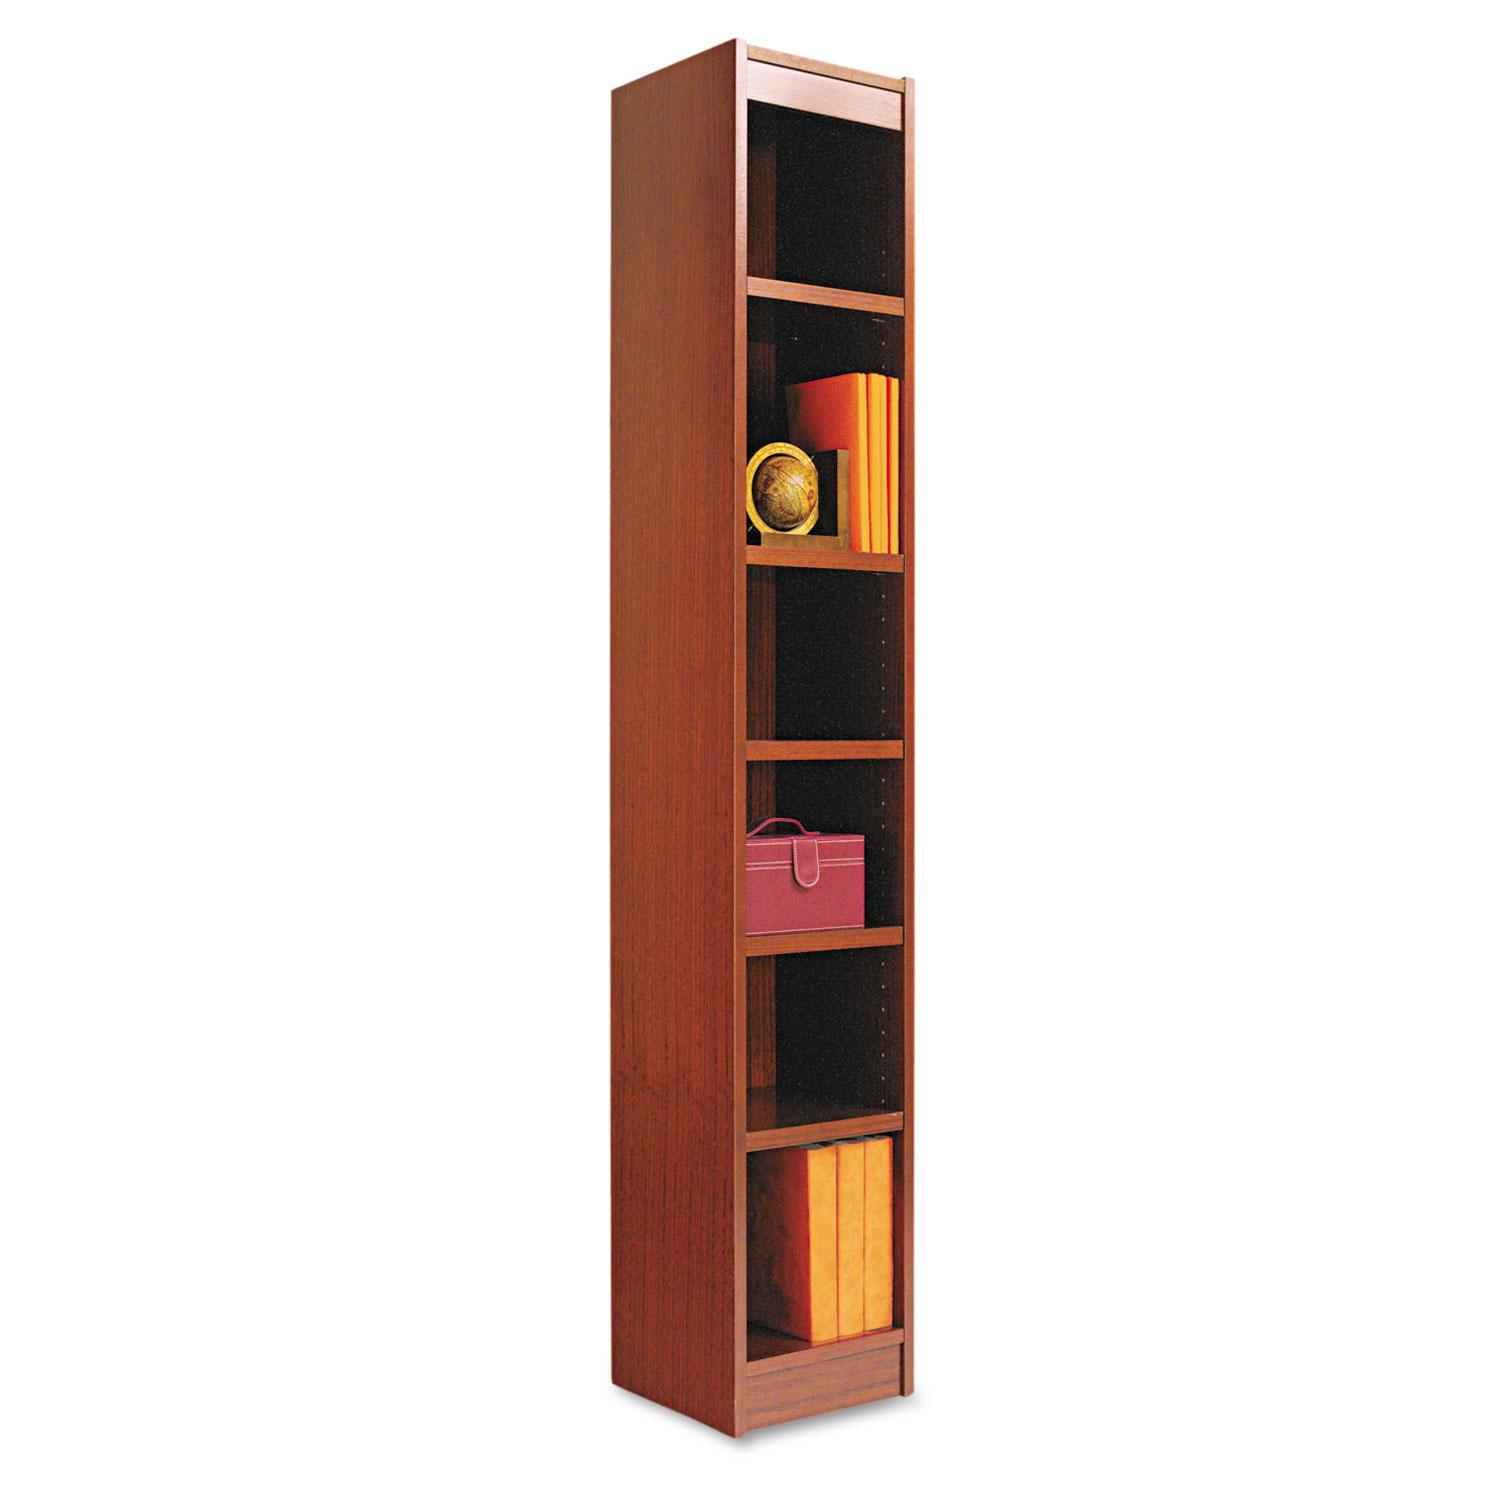  Alera ALEBCS67212MC Narrow Profile Bookcase, Wood Veneer, Six-Shelf, 11.81w x 11.81d x 71.73h, Medium Cherry (ALEBCS67212MC) 